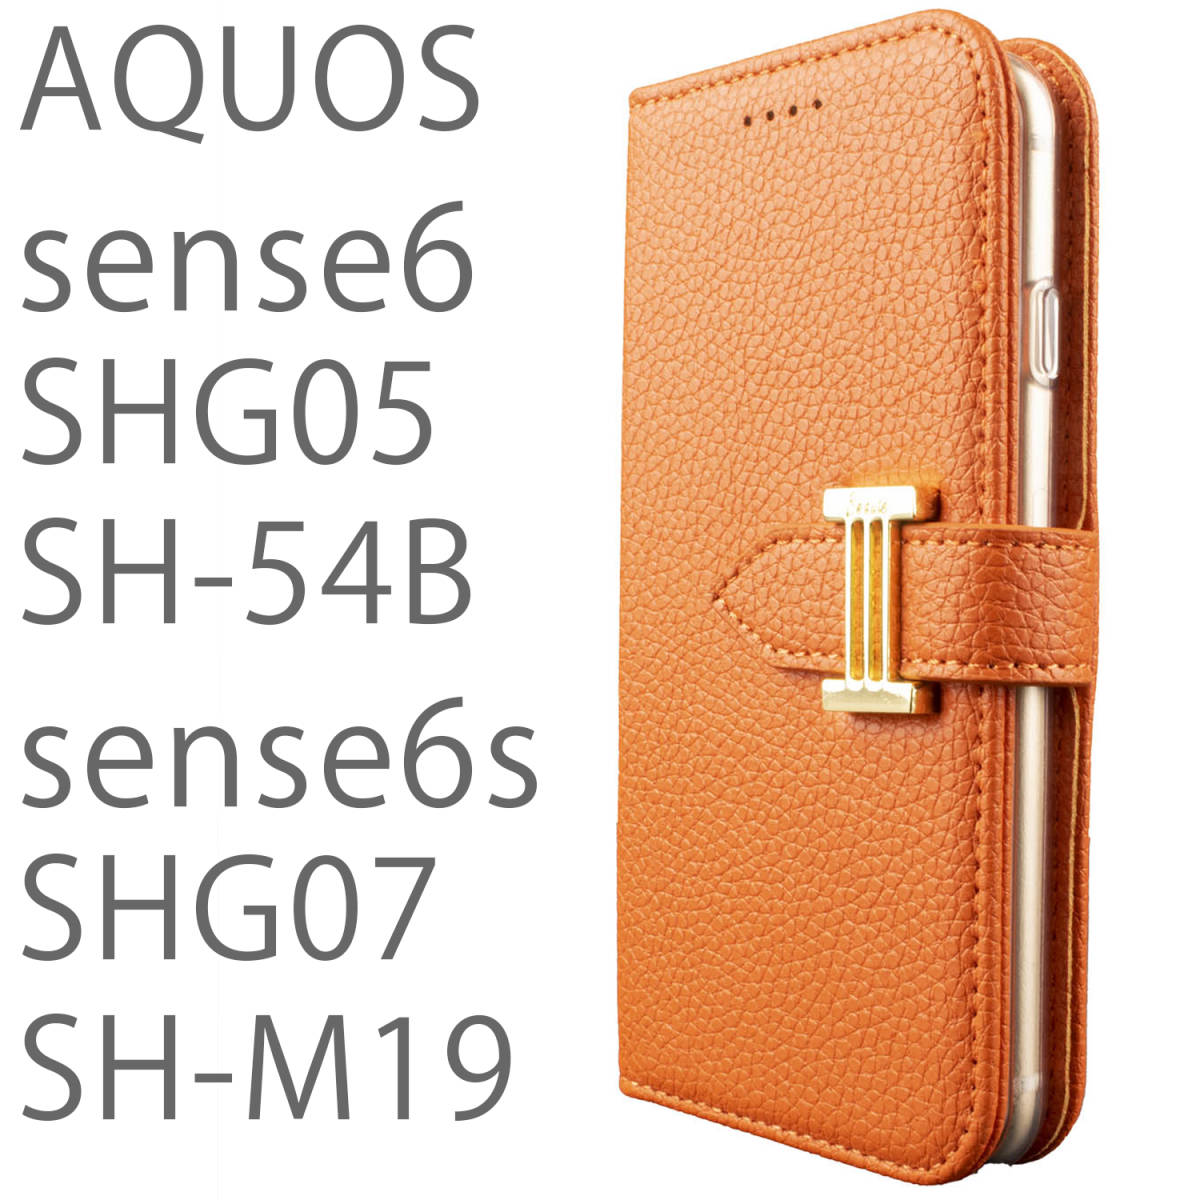 AQUOS sense6s ケース 手帳型 おしゃれ オレンジ SHG07 カバー sense6 SHG05 SH54B SHM19 カバー 鏡付 ストラップ付 シンプル 送料無料の画像1